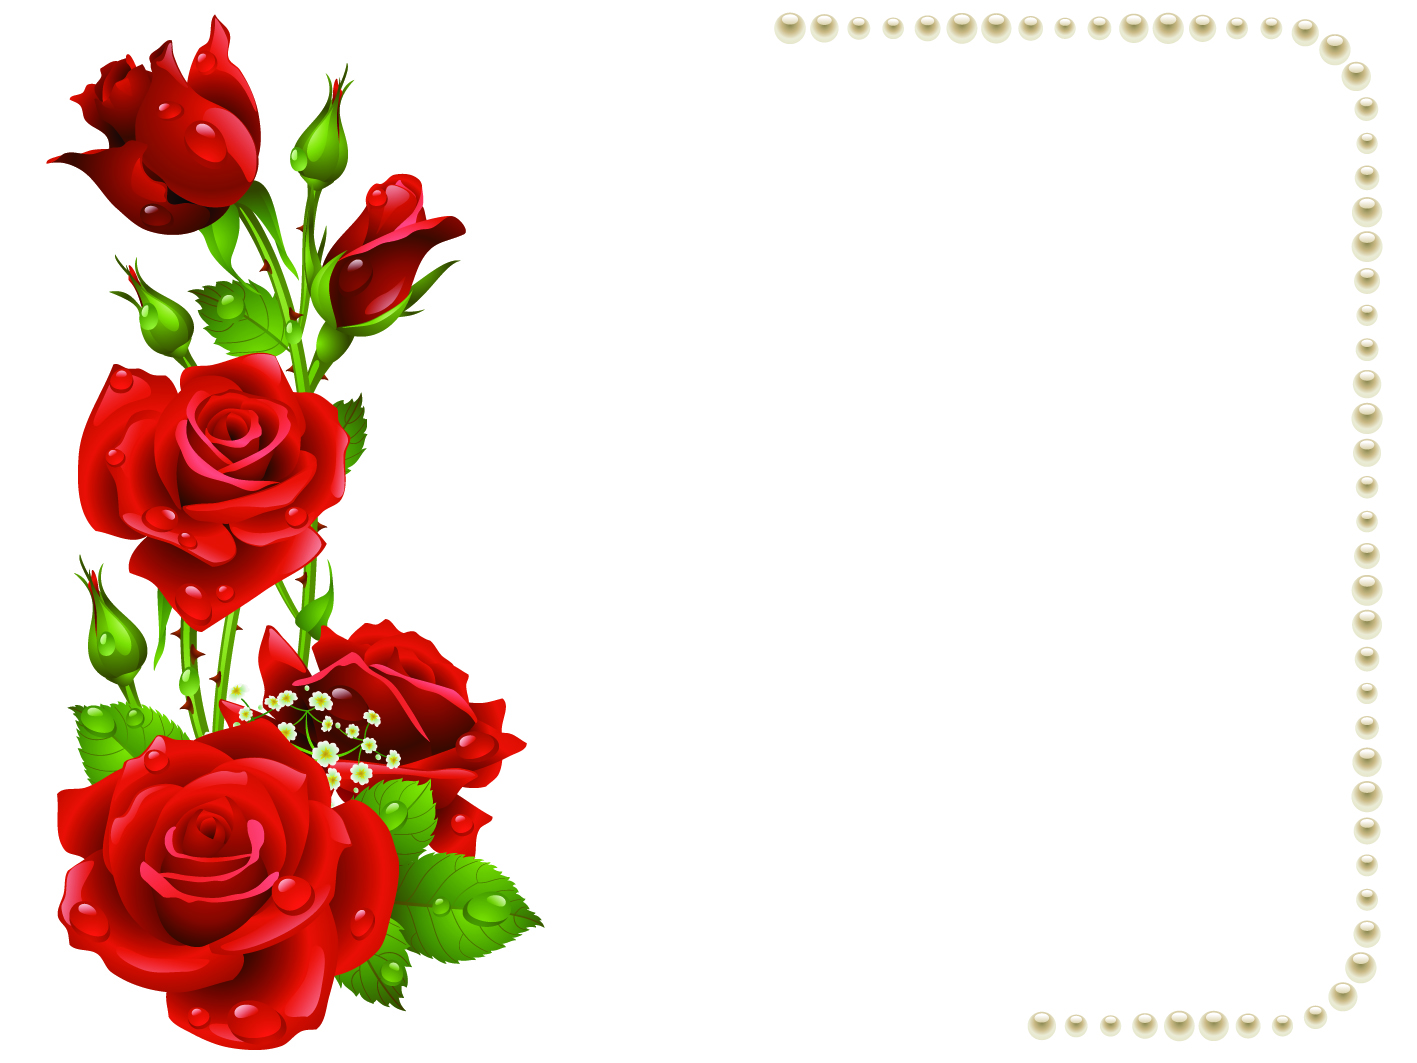 San Valentino con bouquet di rose 3D festa della mamma elegante biglietto pop up per compleanno biglietto di auguri o buono Marca: Diese KlappkartenBiglietto di auguri di compleanno con rose rosse anniversario F22 